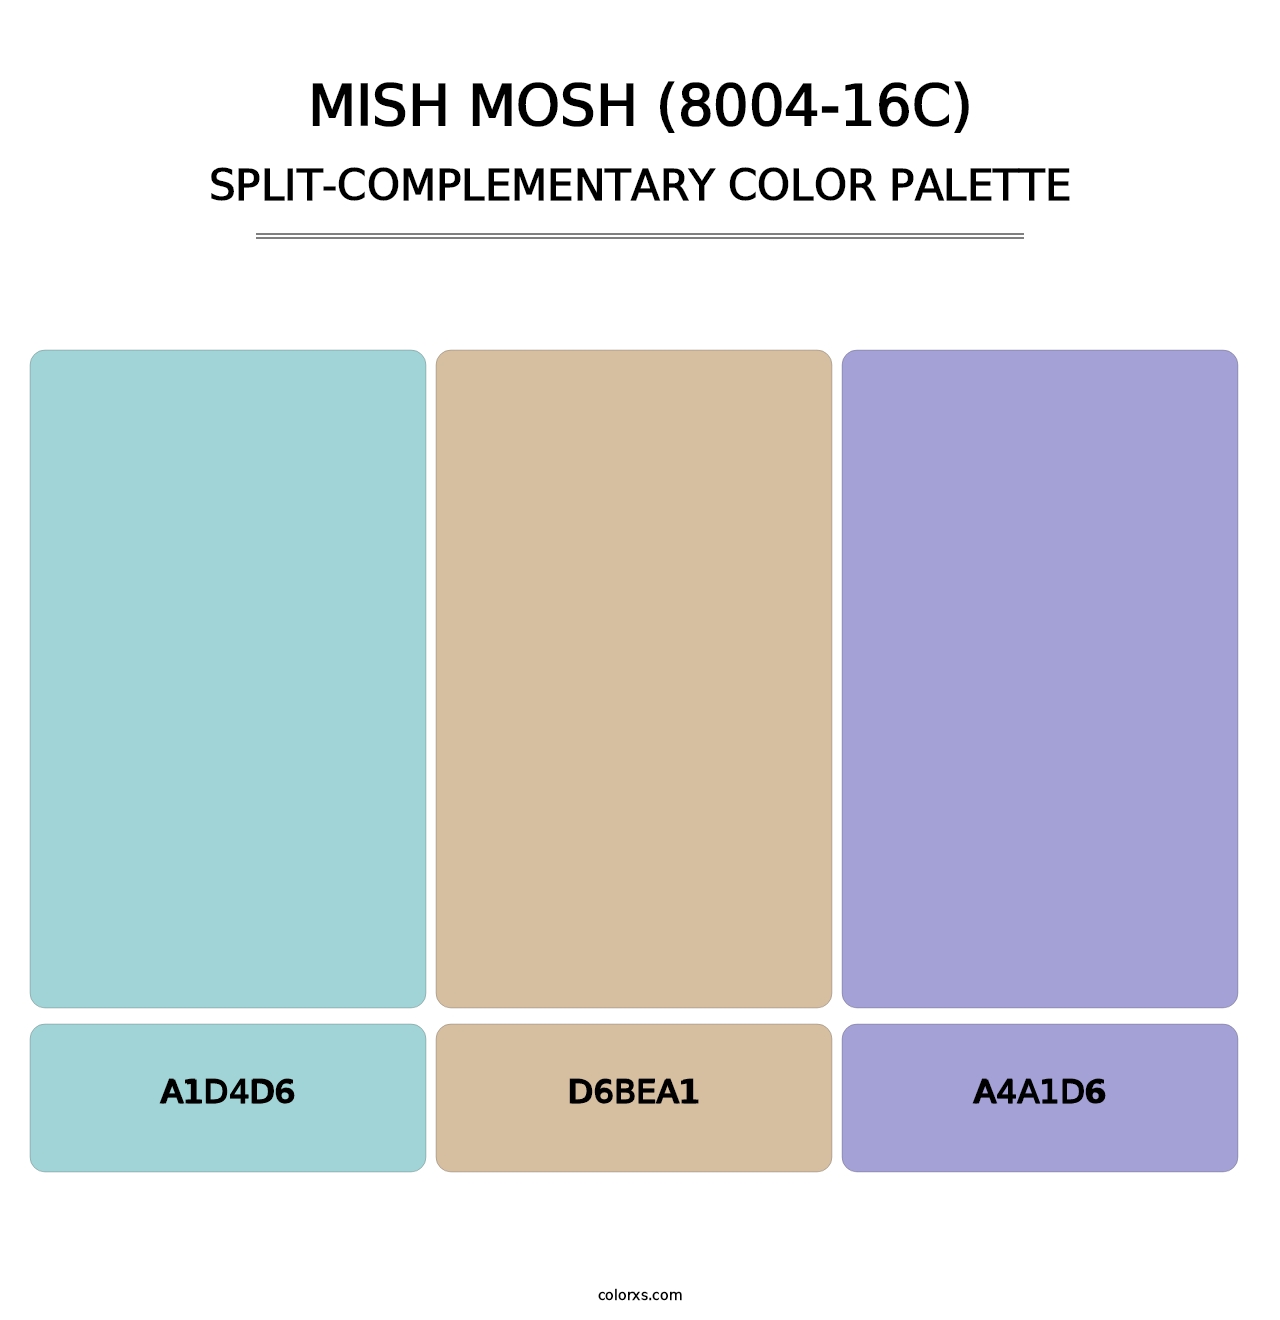 Mish Mosh (8004-16C) - Split-Complementary Color Palette